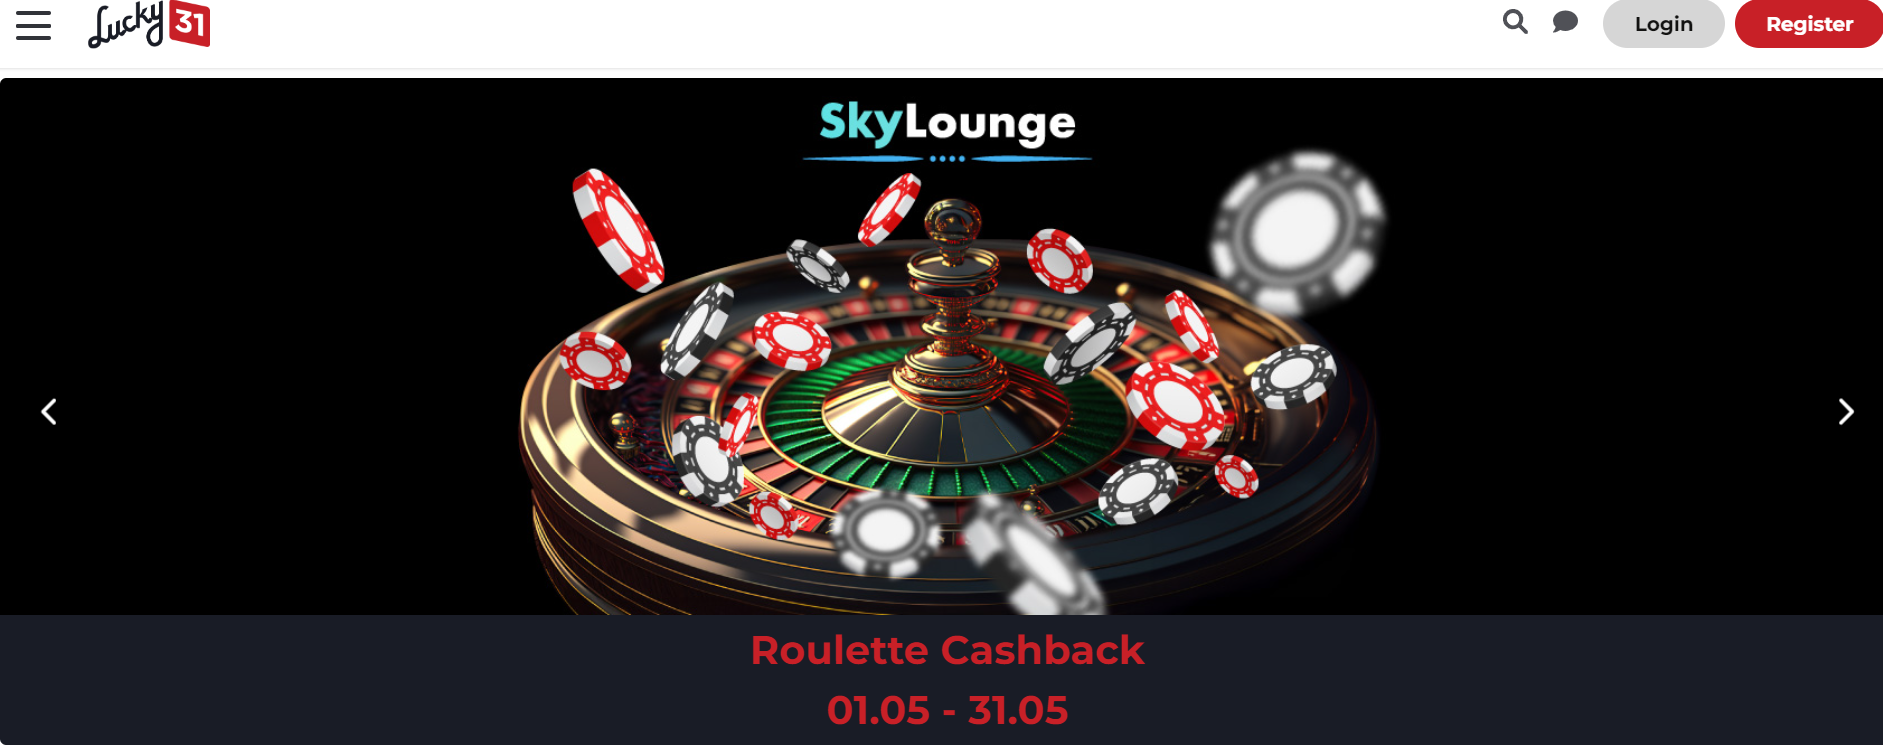 Lucky31 Casino jeux